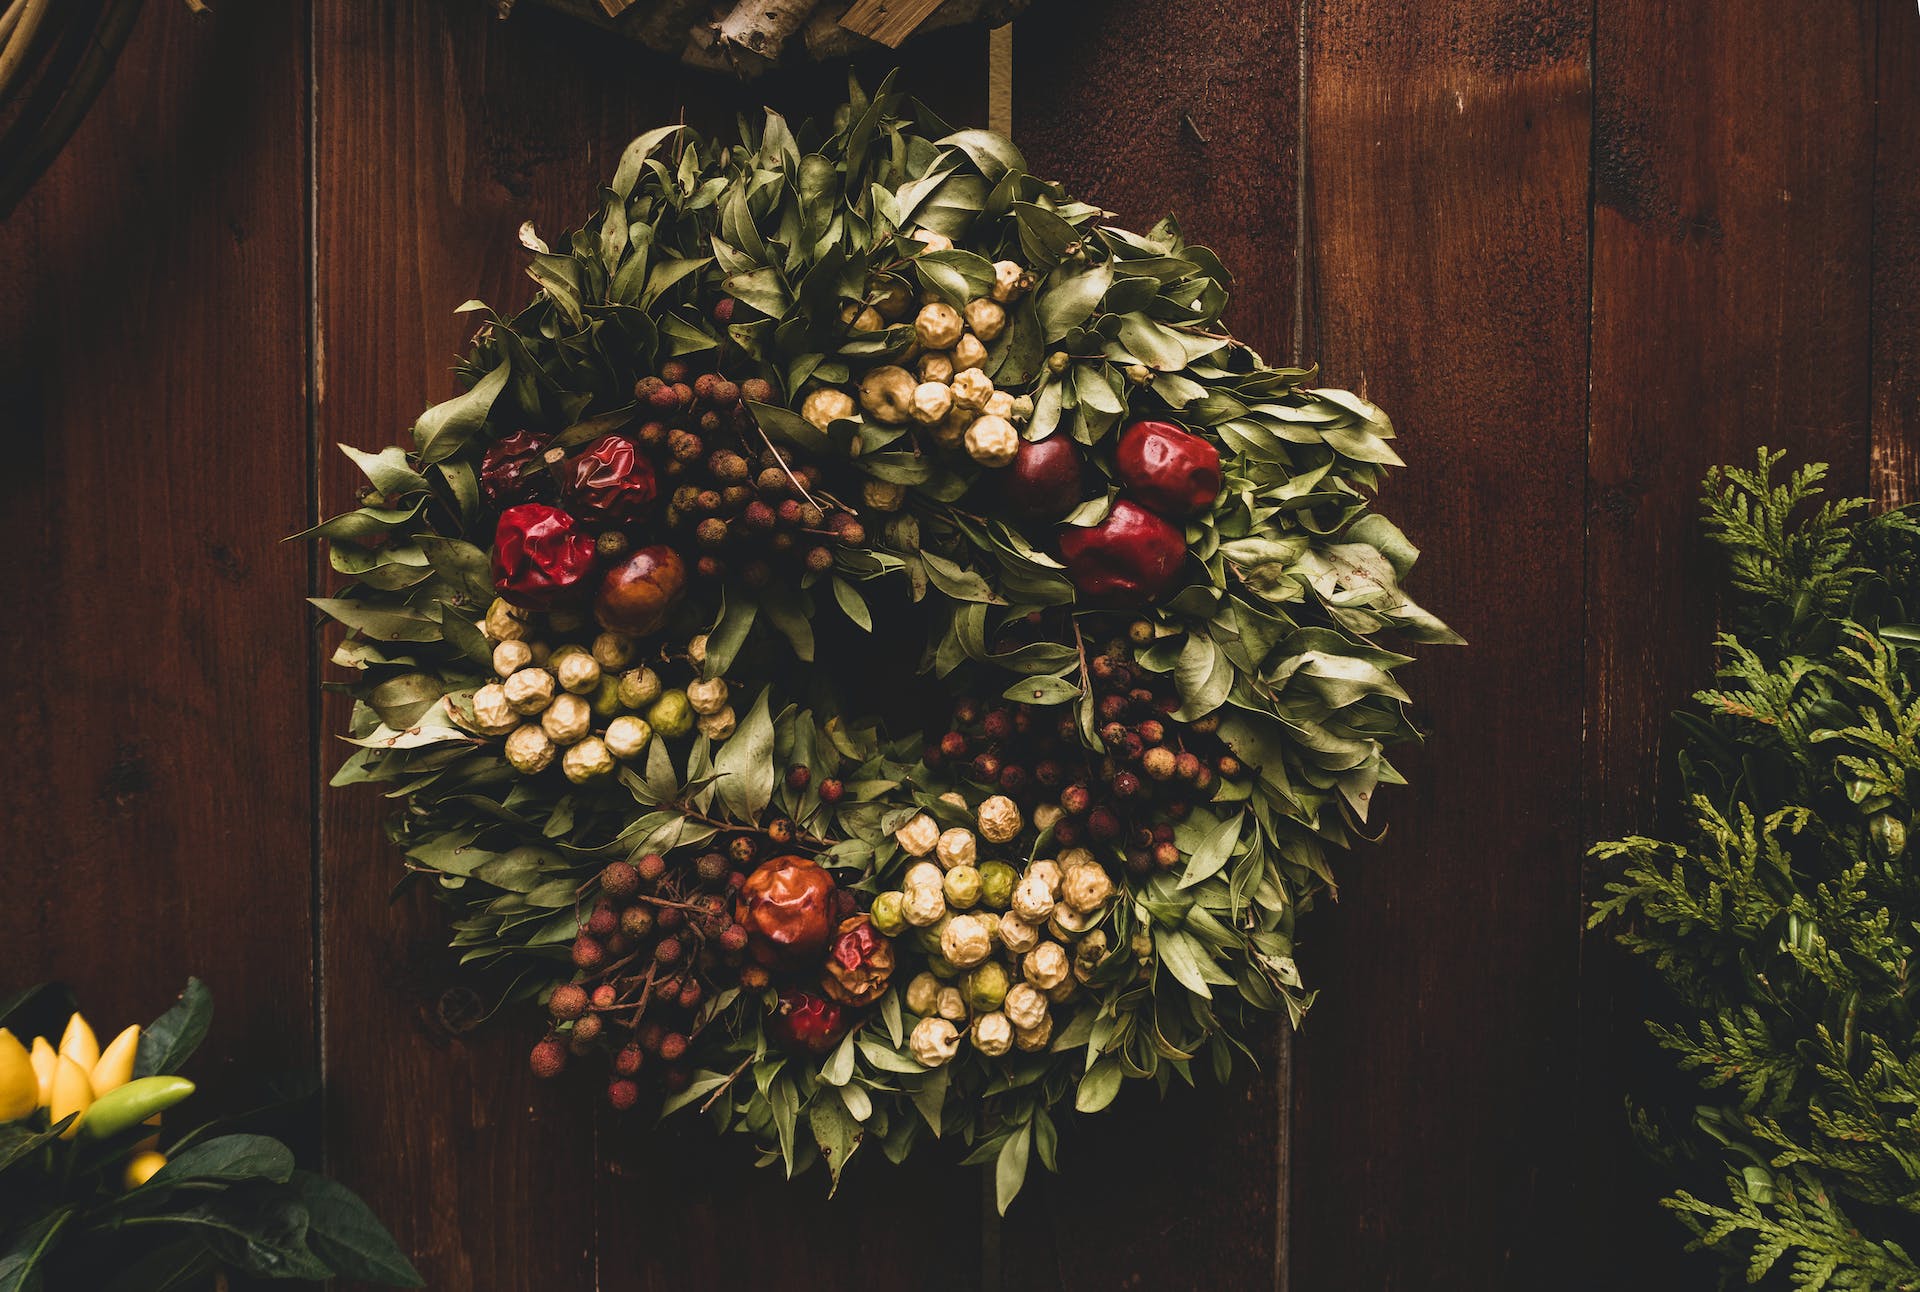 Christmas wreath on the front door